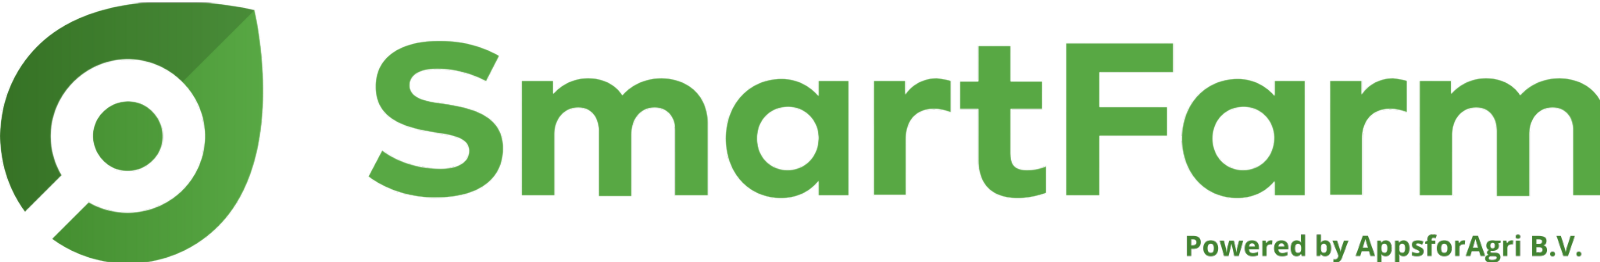 SmartFarm logo